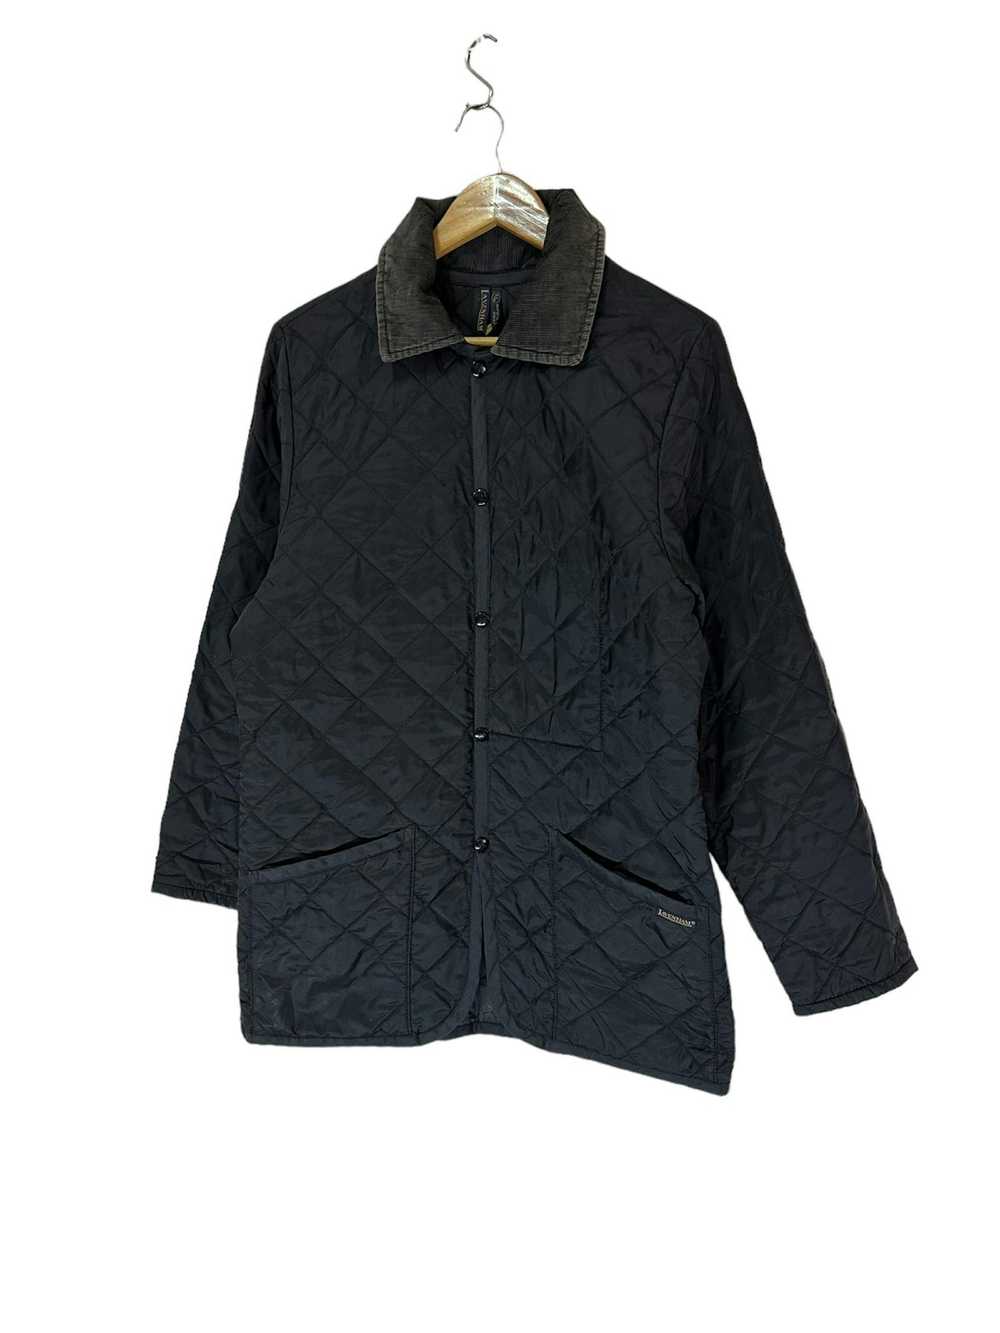 Lavenham Lavenham quilted jacket - image 2